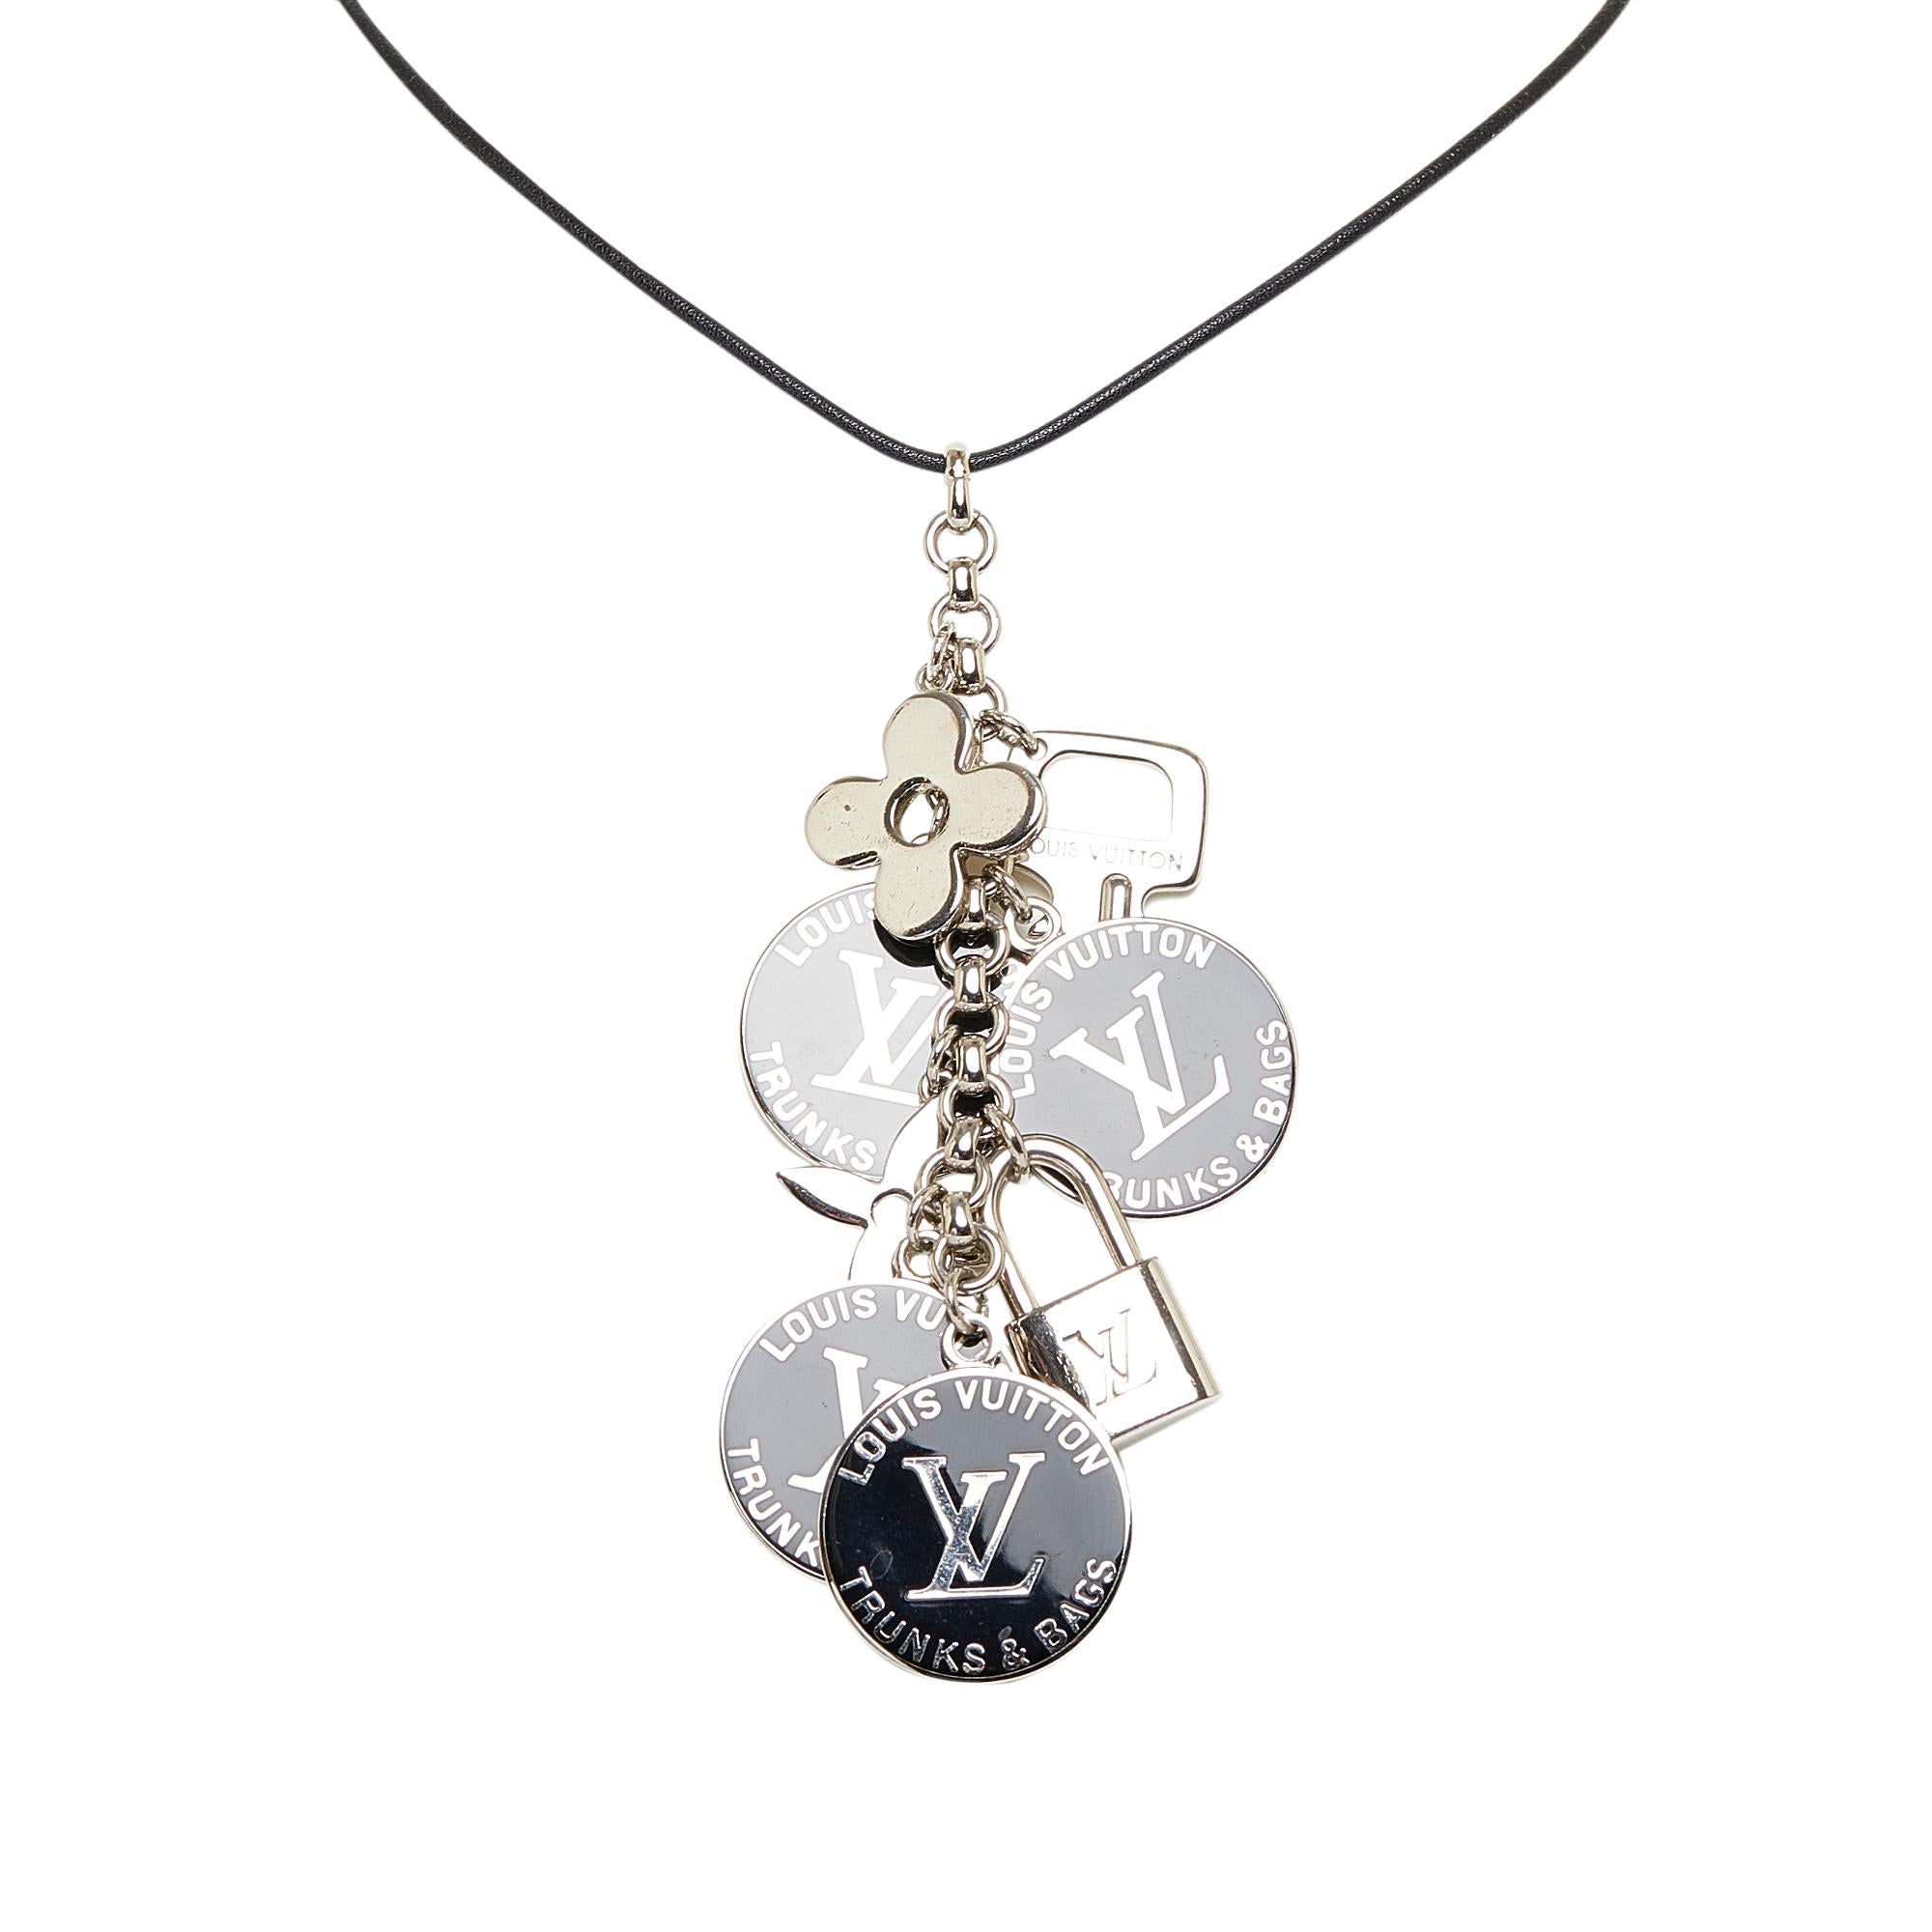 Louis Vuitton Trunks & Bags Charm Bracelet